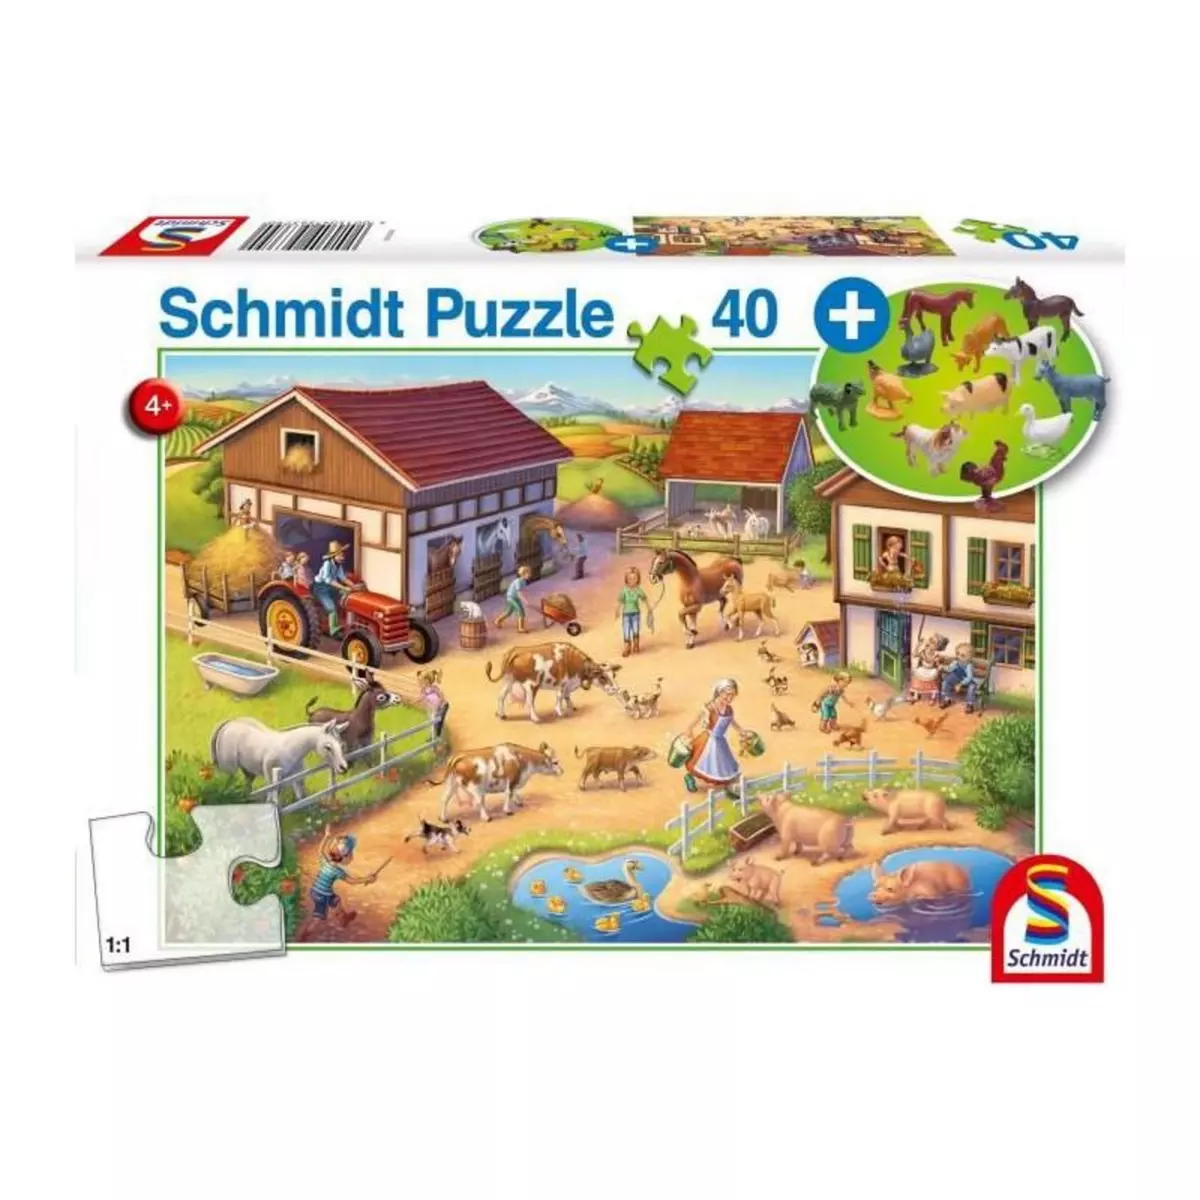 Schmidt Spiele Une ferme joyeuse - avec add on (animaux) - 40 pcs - SCHMIDT SPIELE